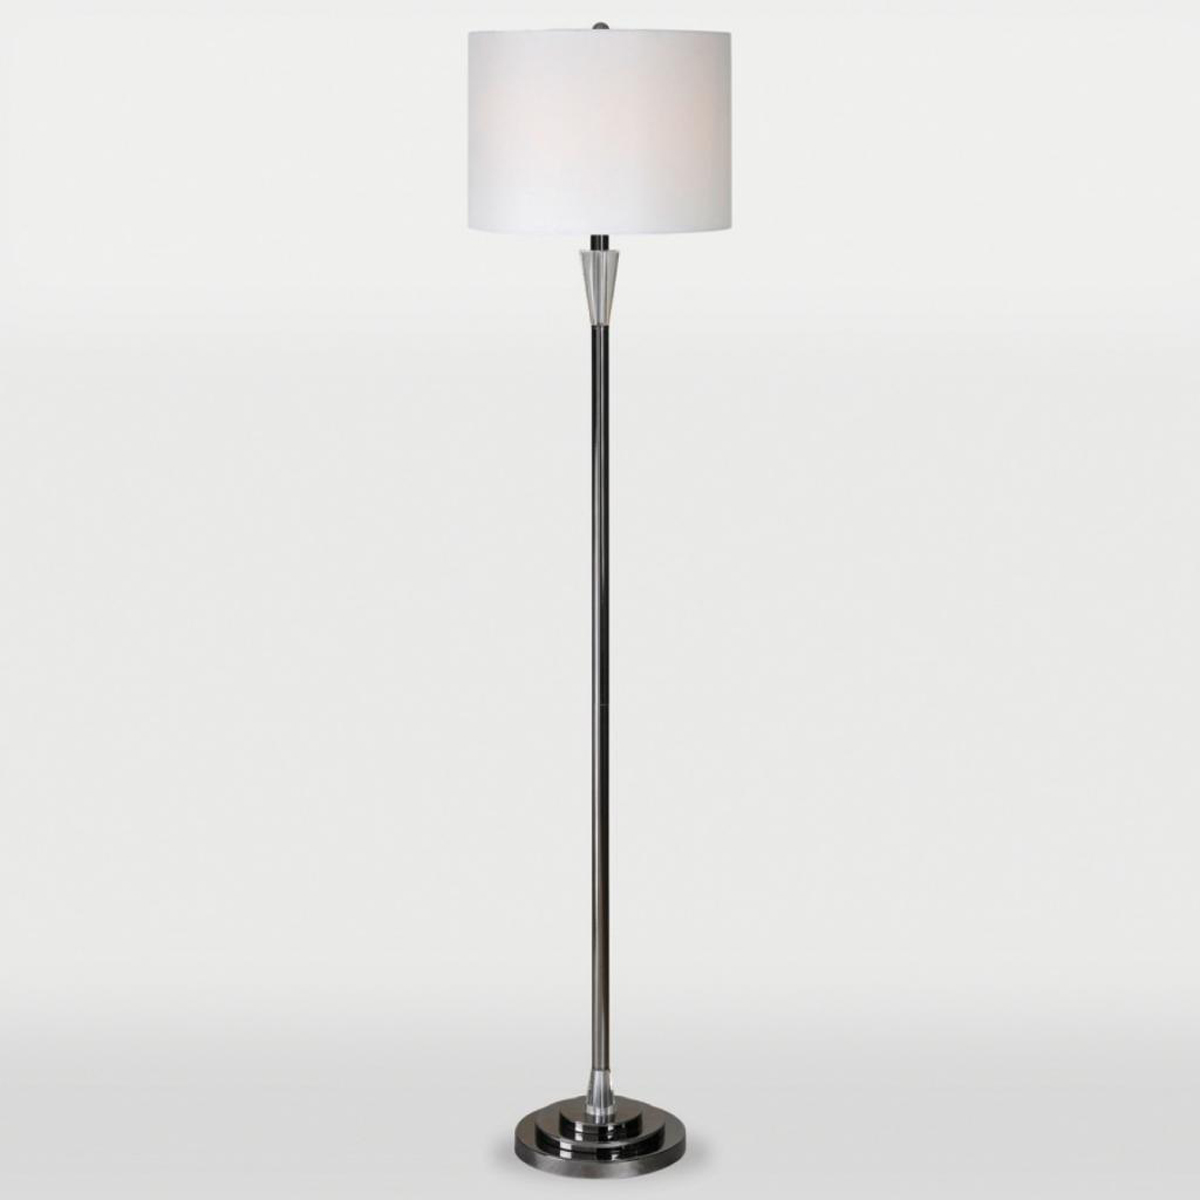 Ren-Wil Arkitekt Floor Lamp - Brushed Nickel